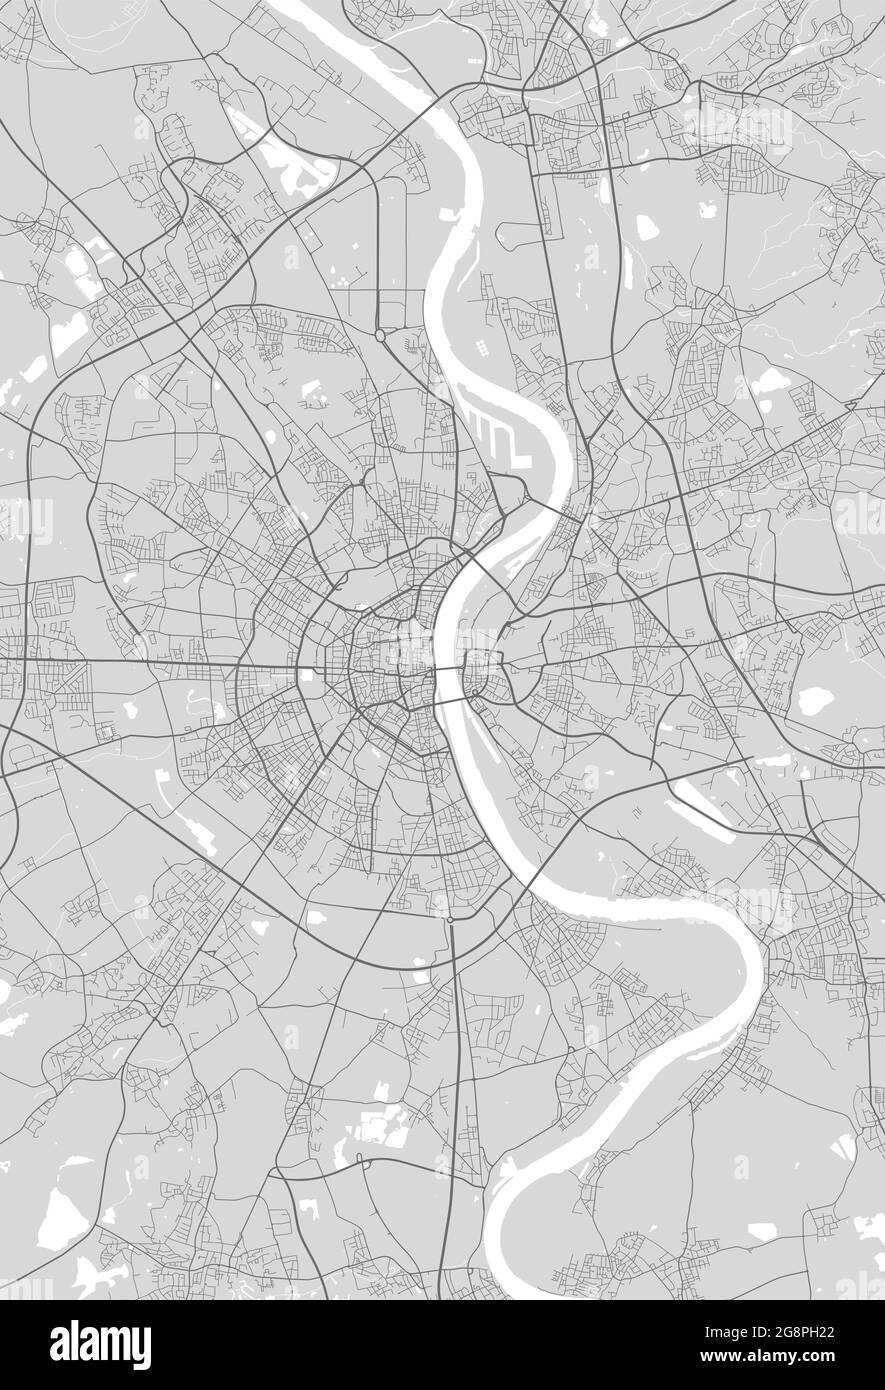 Stadtplan von Köln. Vektorgrafik, Köln Karte Graustufen Kunstposter. Straßenkarte mit Straßen, Ansicht der Metropolregion. Stock Vektor